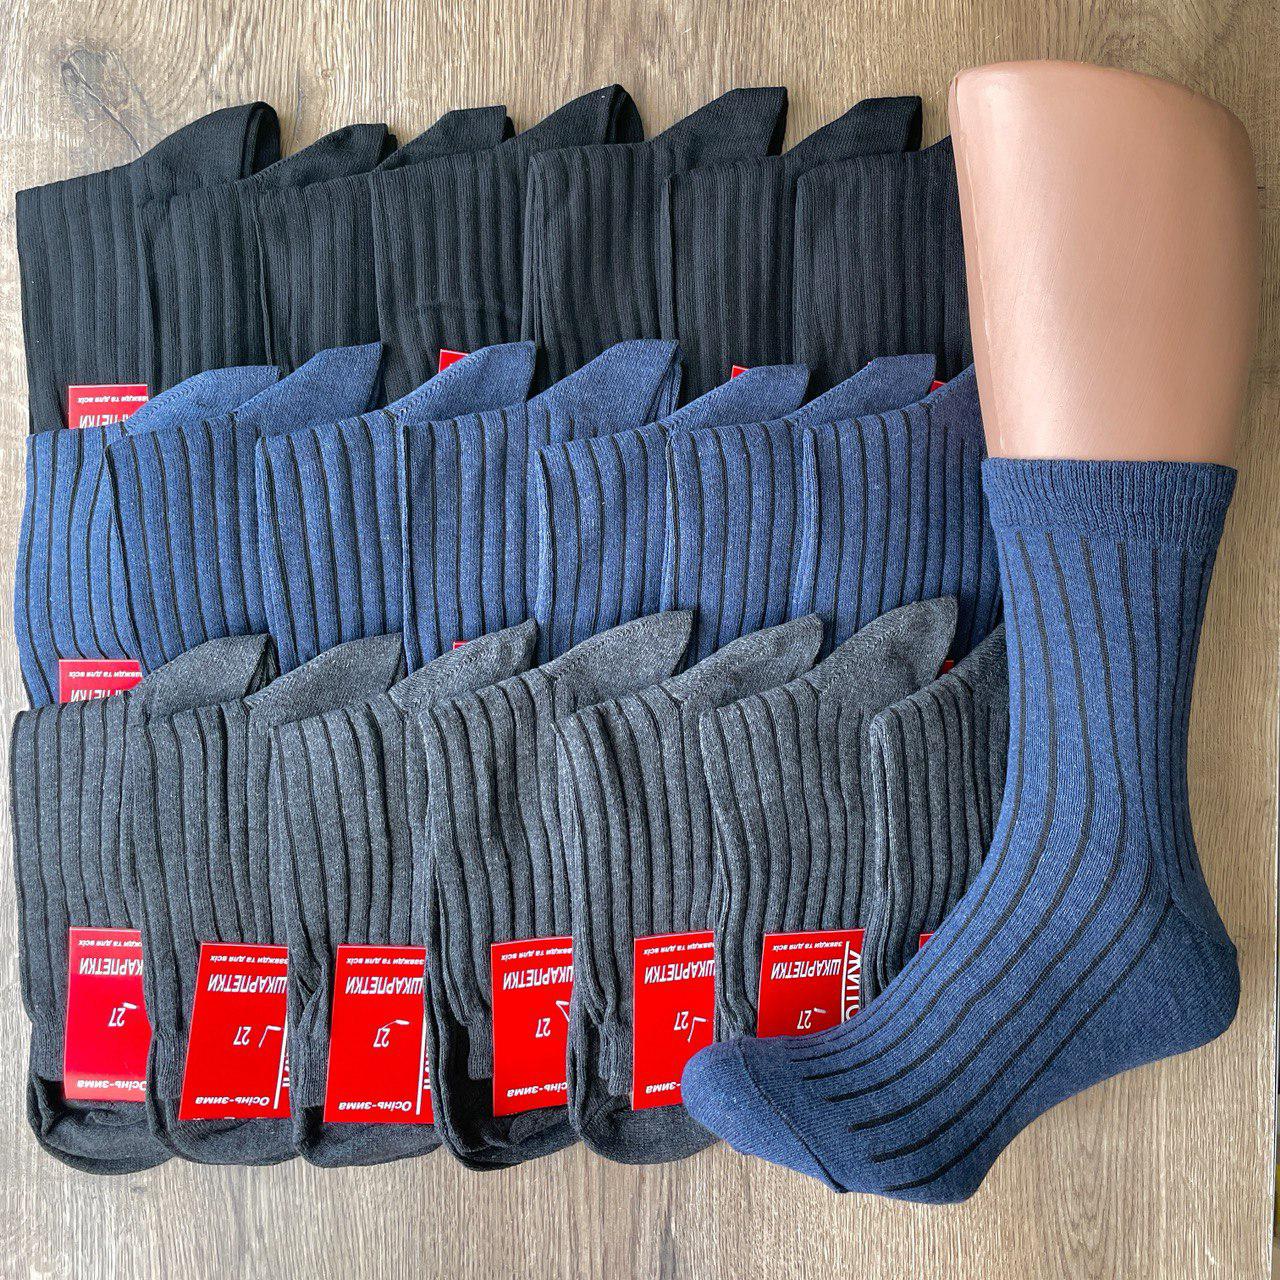 Как вязать носки: способы техника вязания для начинающих